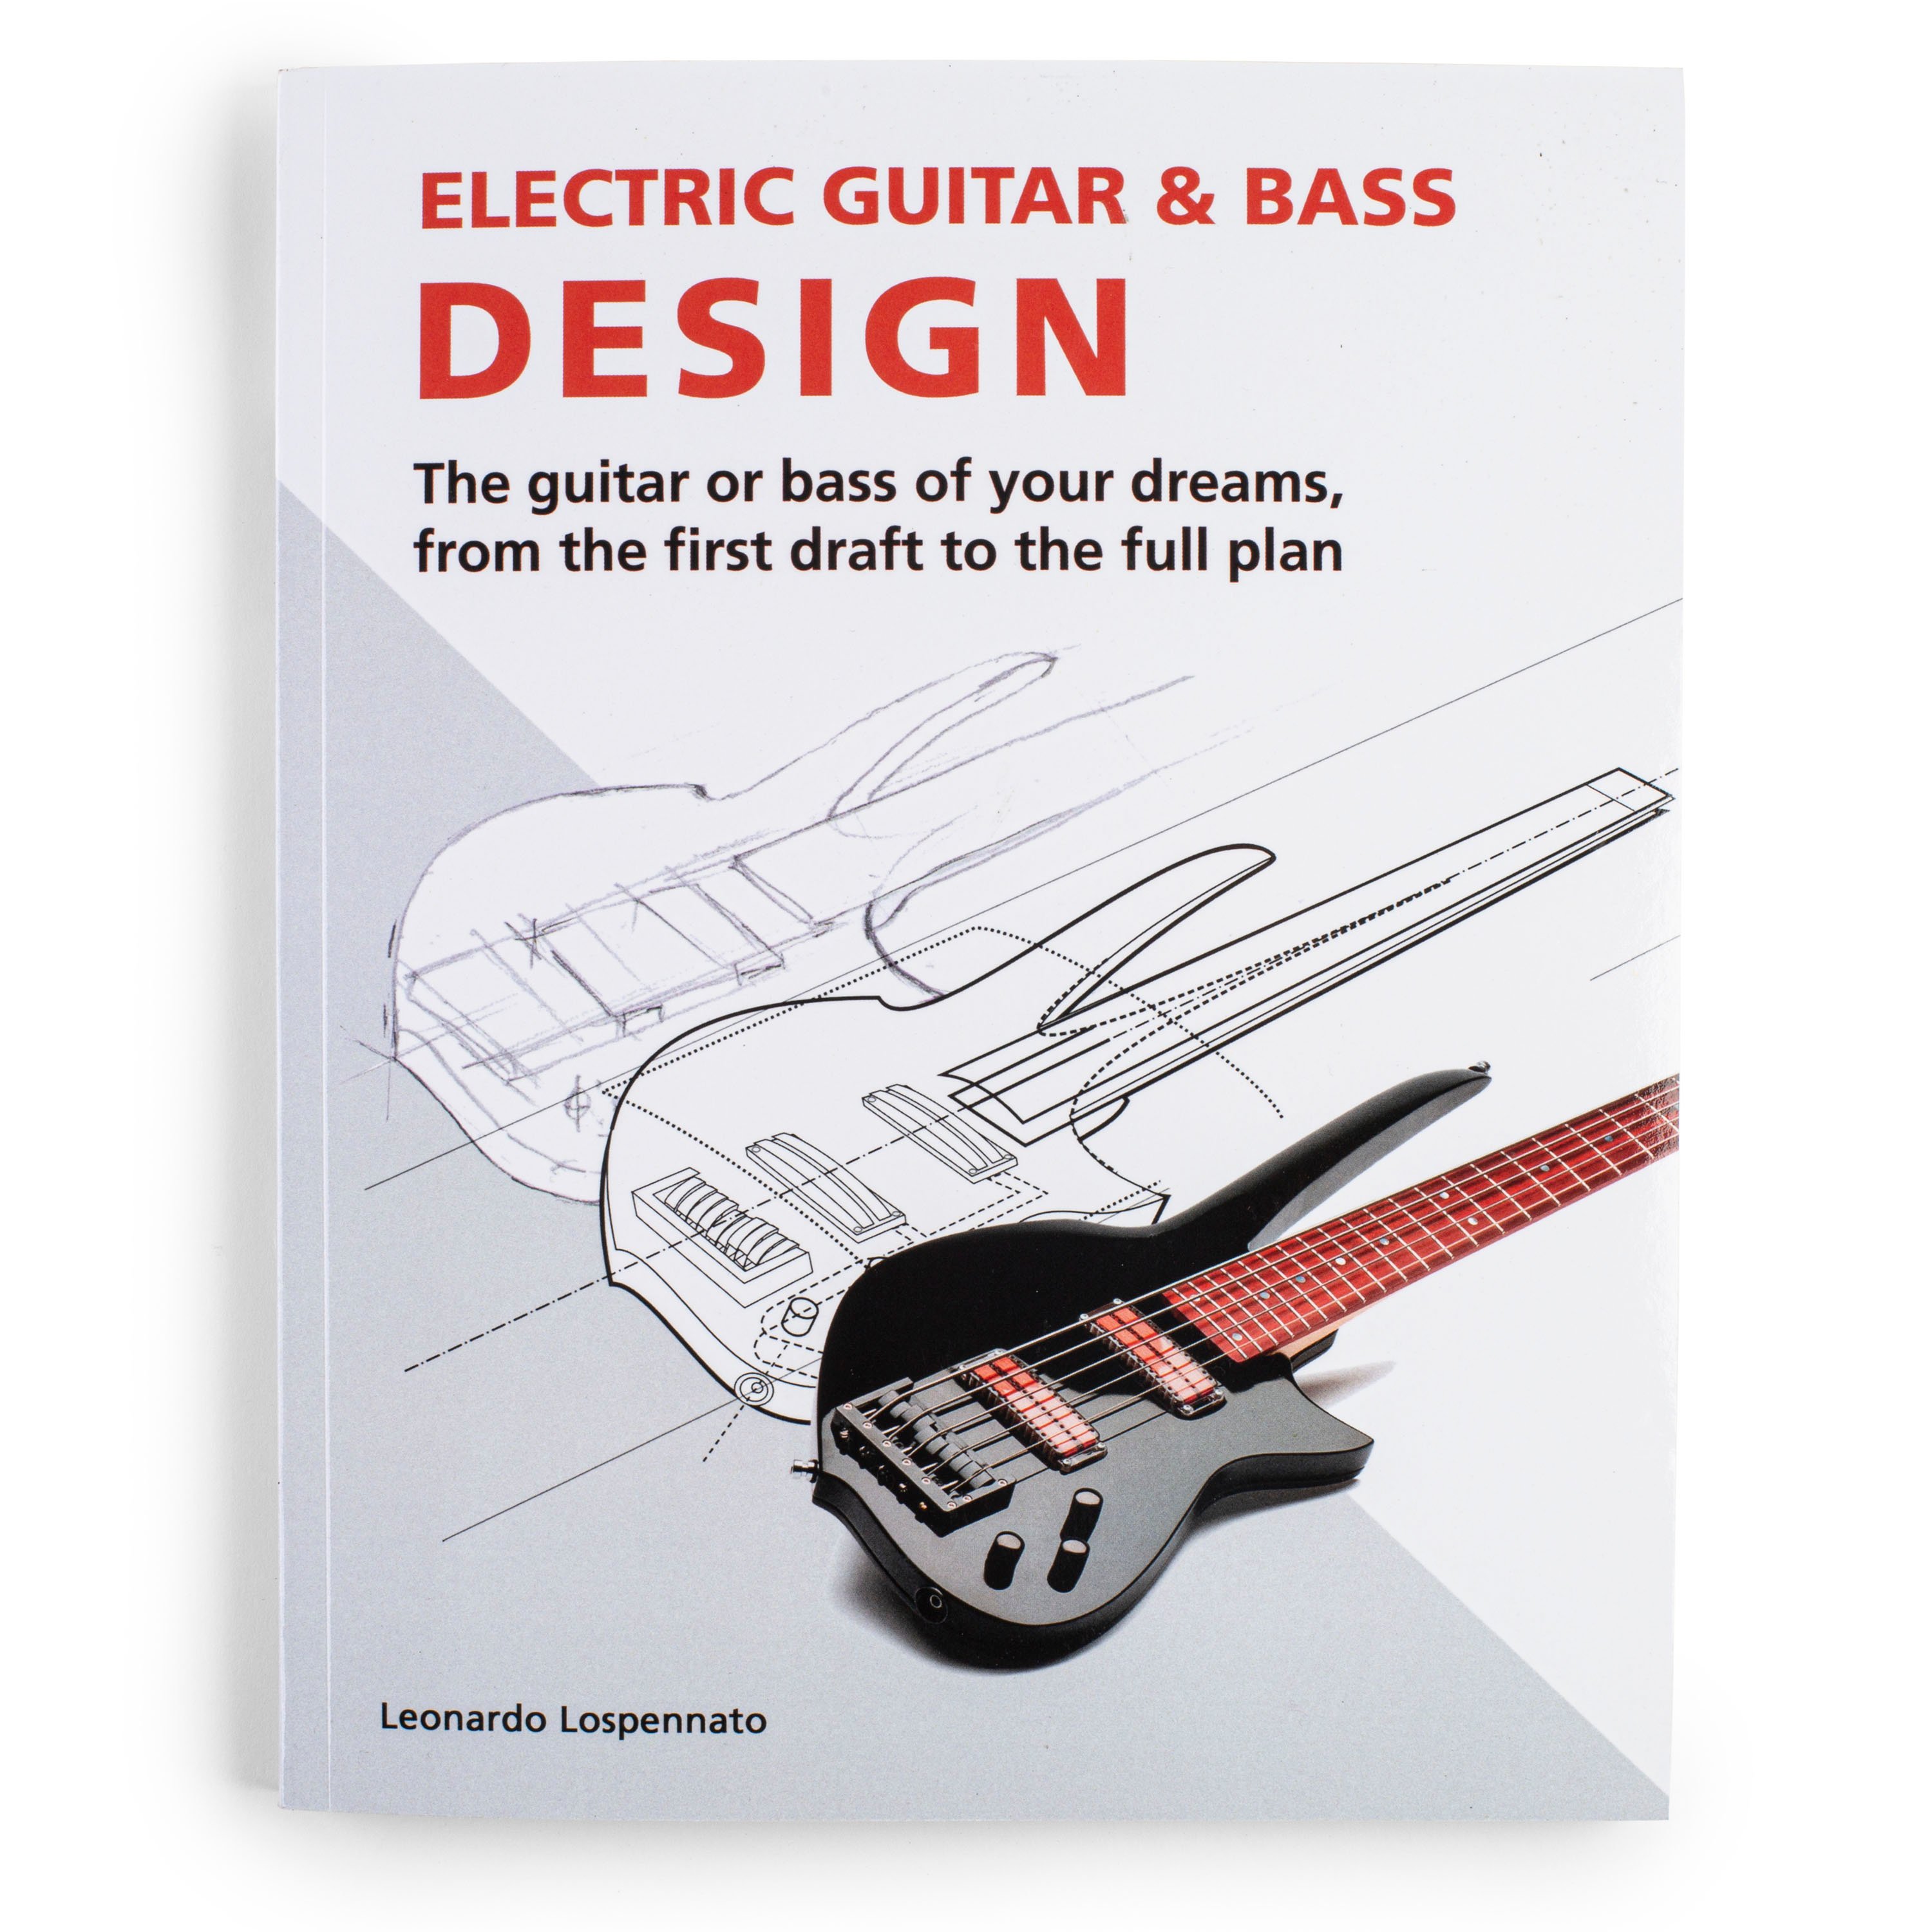 Electric Guitar & Bass Design